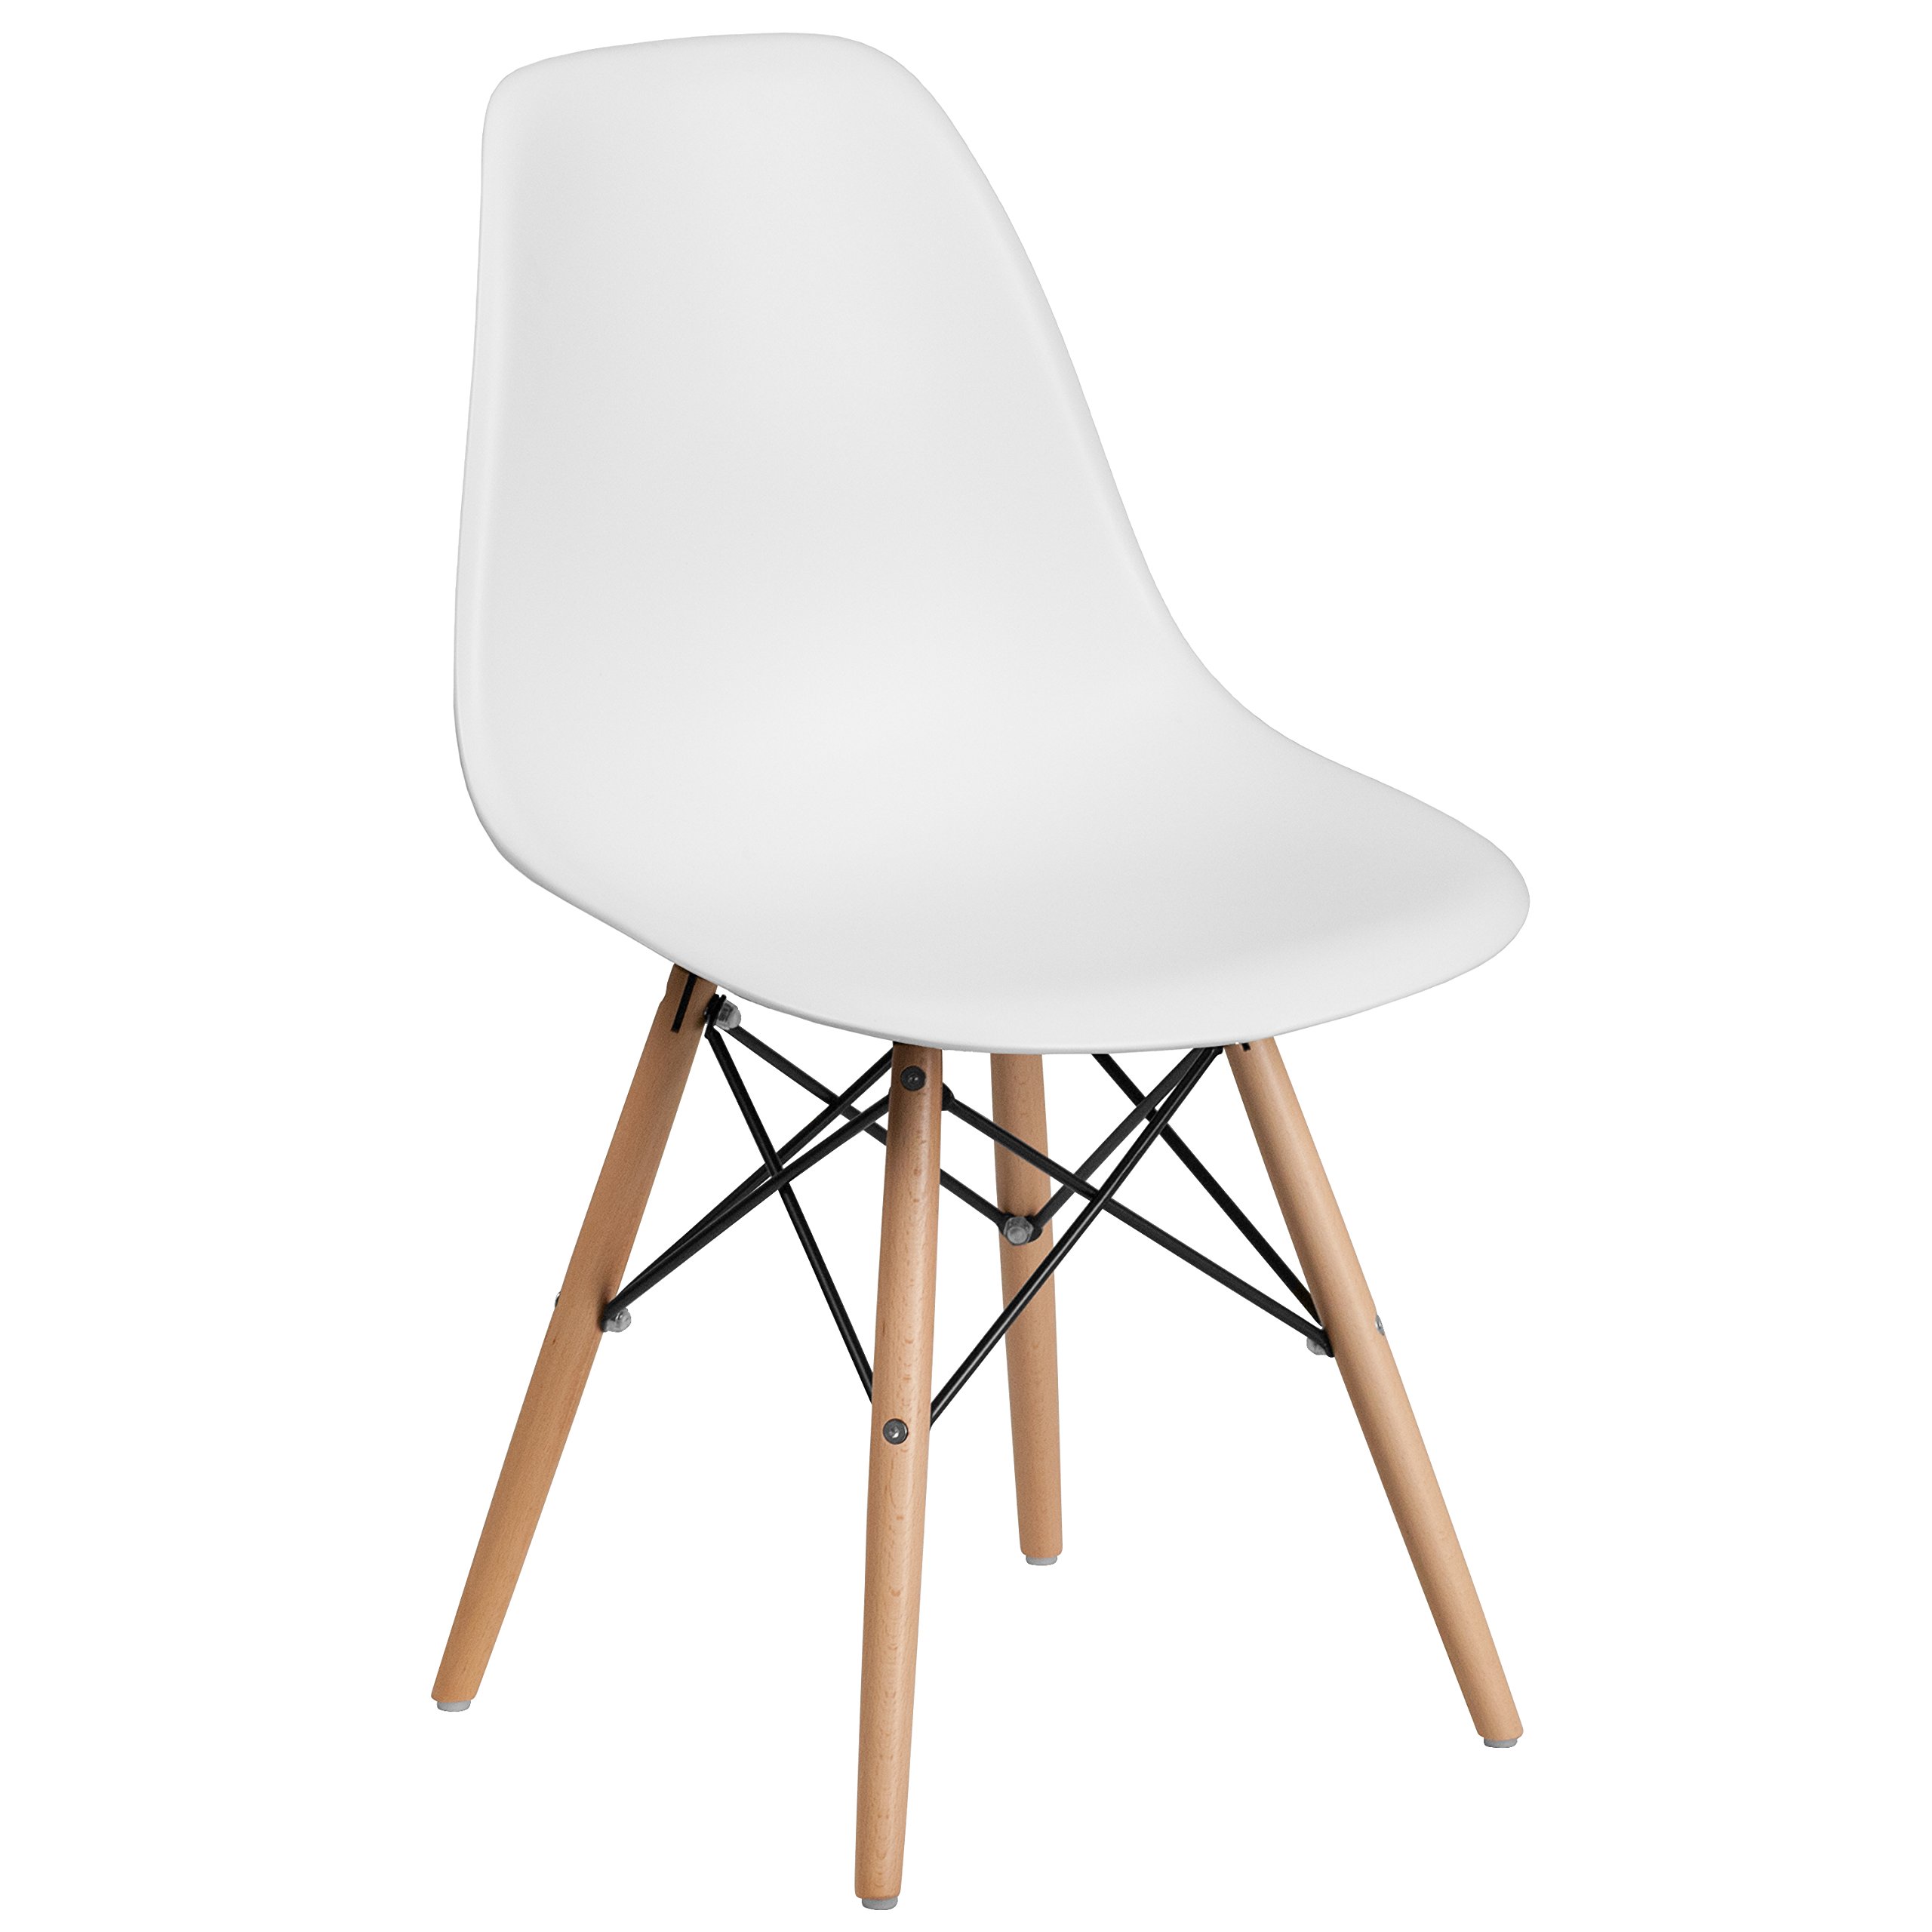 Chaise en plastique blanc avec pieds en bois Home Decor